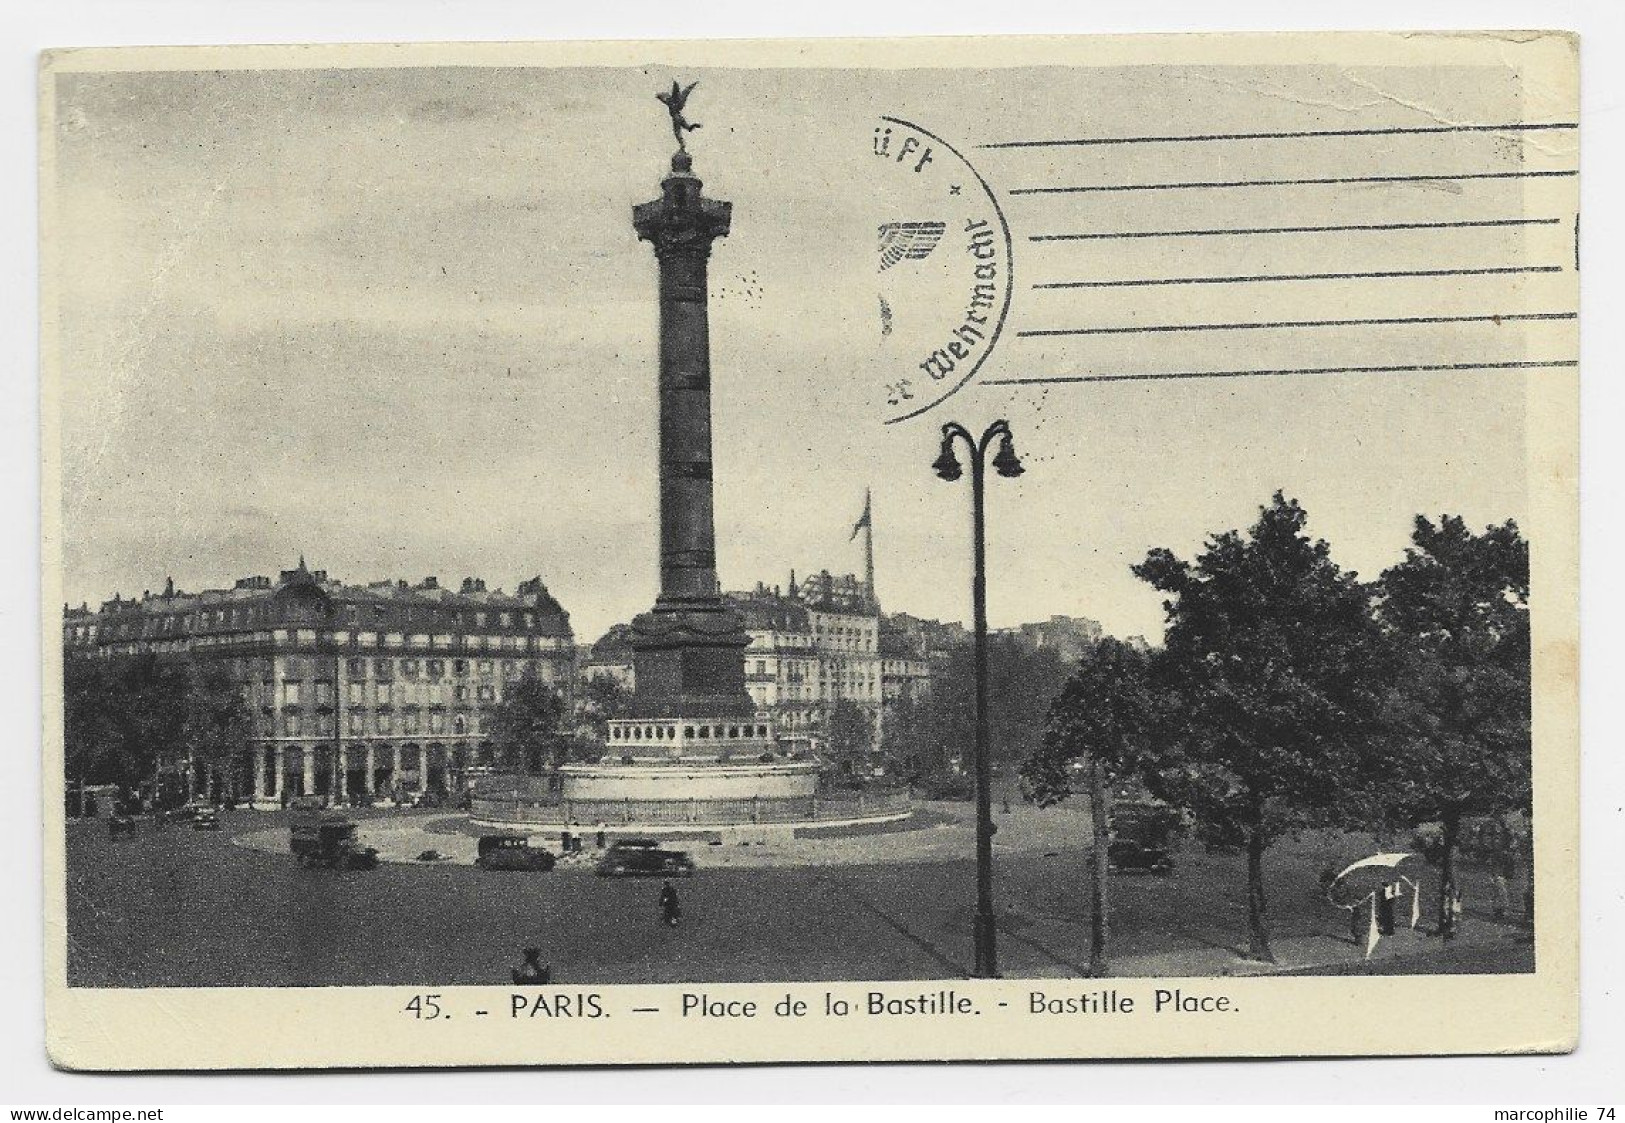 FRANCE CARTE EN FM DE PARIS 19.X.1940 ADRESSEE SUISSE CAMP MILITAIRE INTERNEMENT THORIGEN BERNE SUISSE + FELPOST CENSURE - Oblitérations